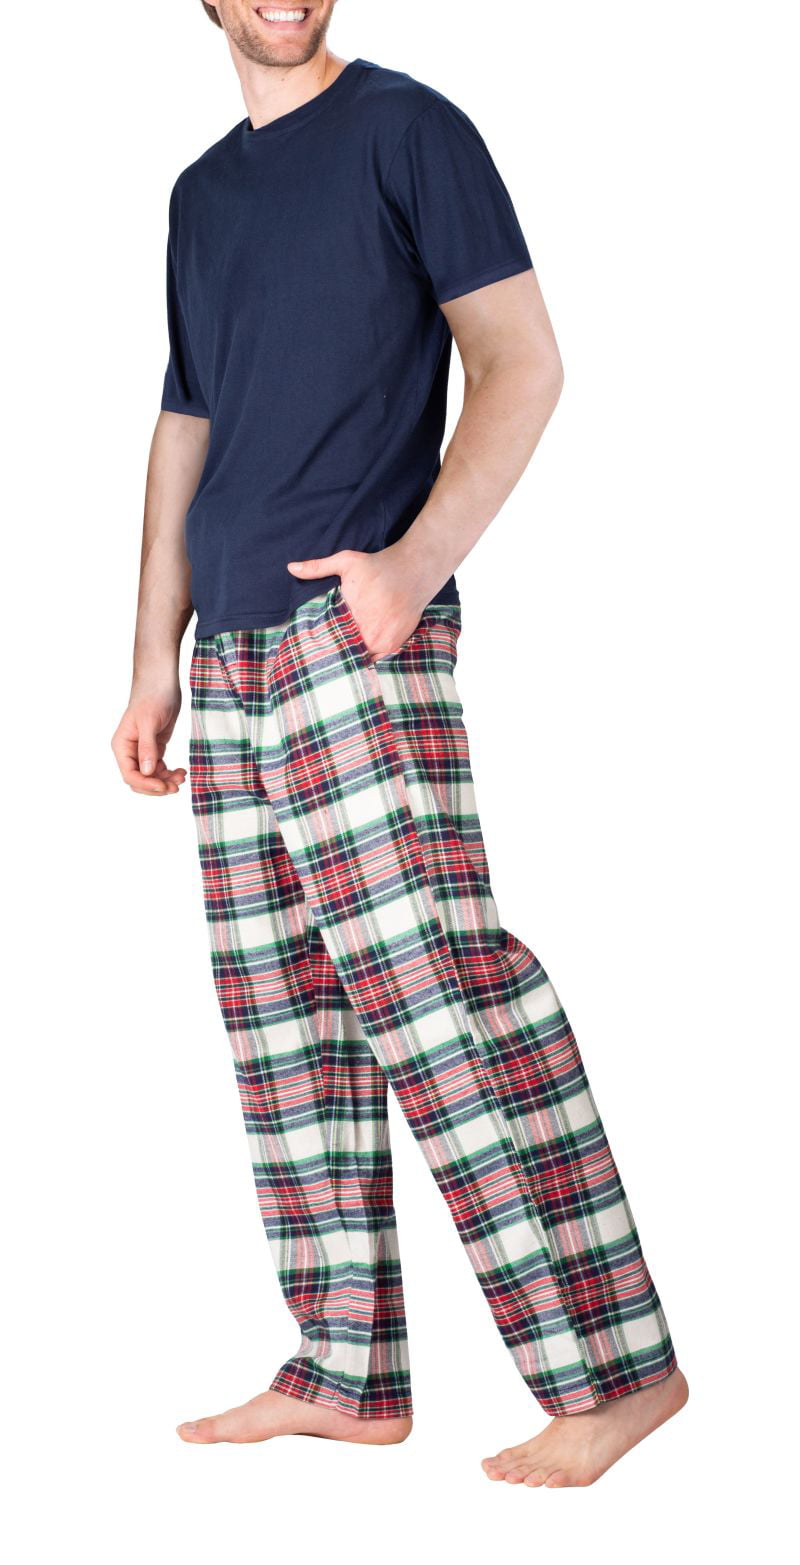 SLEEPHERO Men's Sleep Short Sleeve Flannel Pajama Pant Set